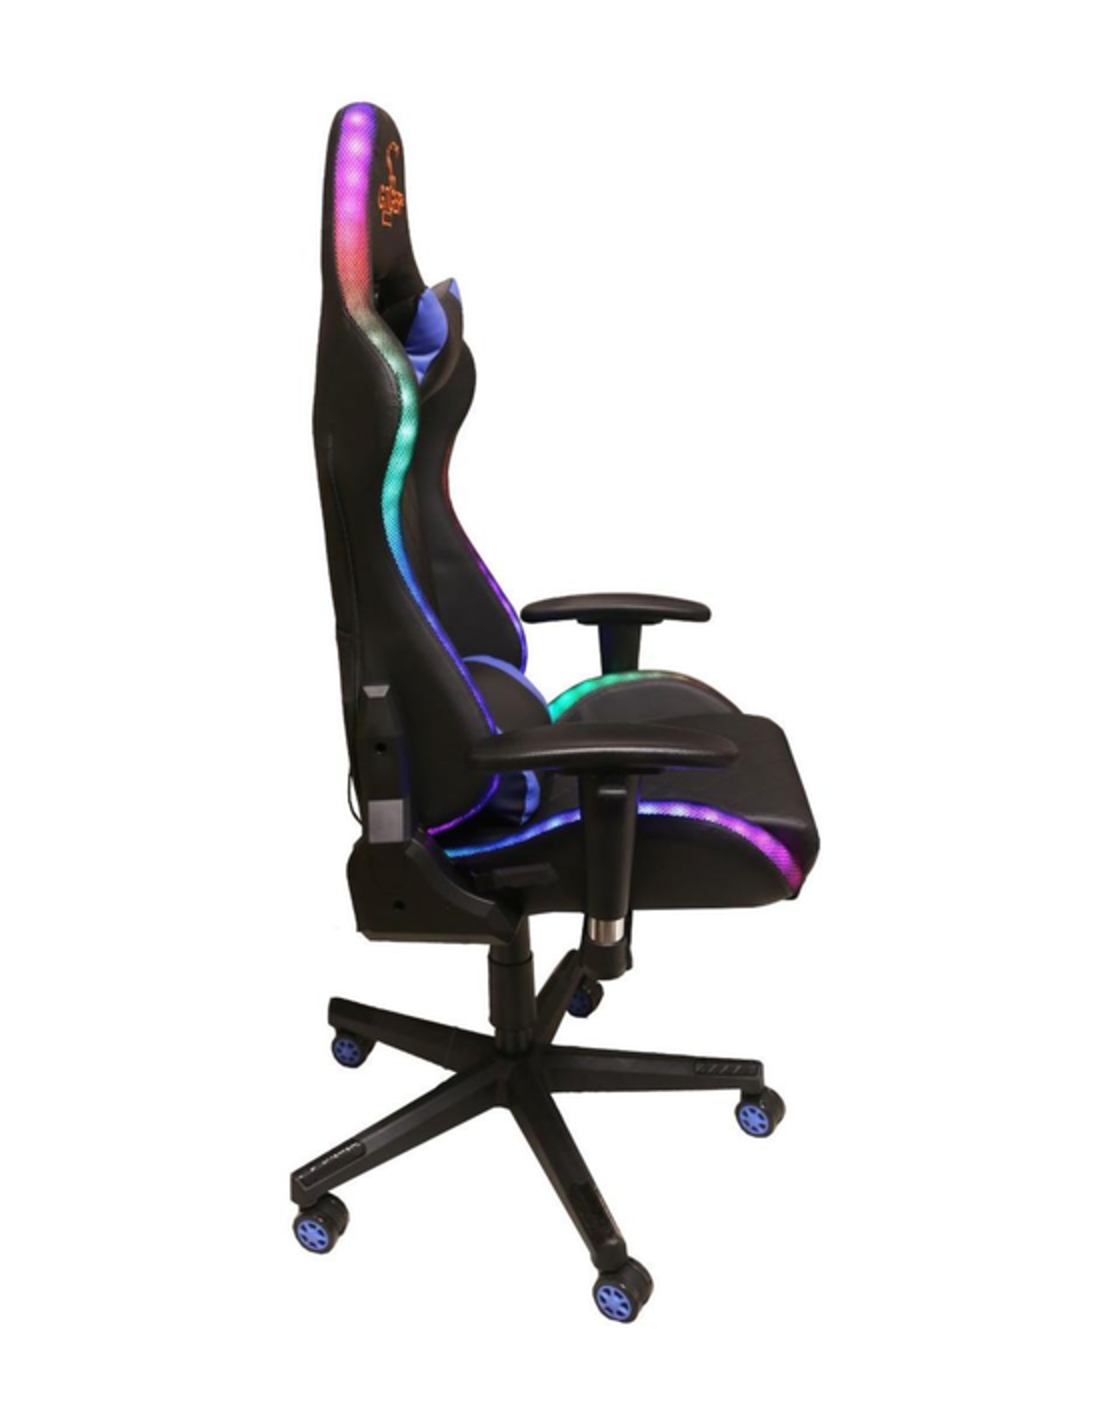 כיסא גיימינג מפואר RGBשך GTIGER G-Tiger